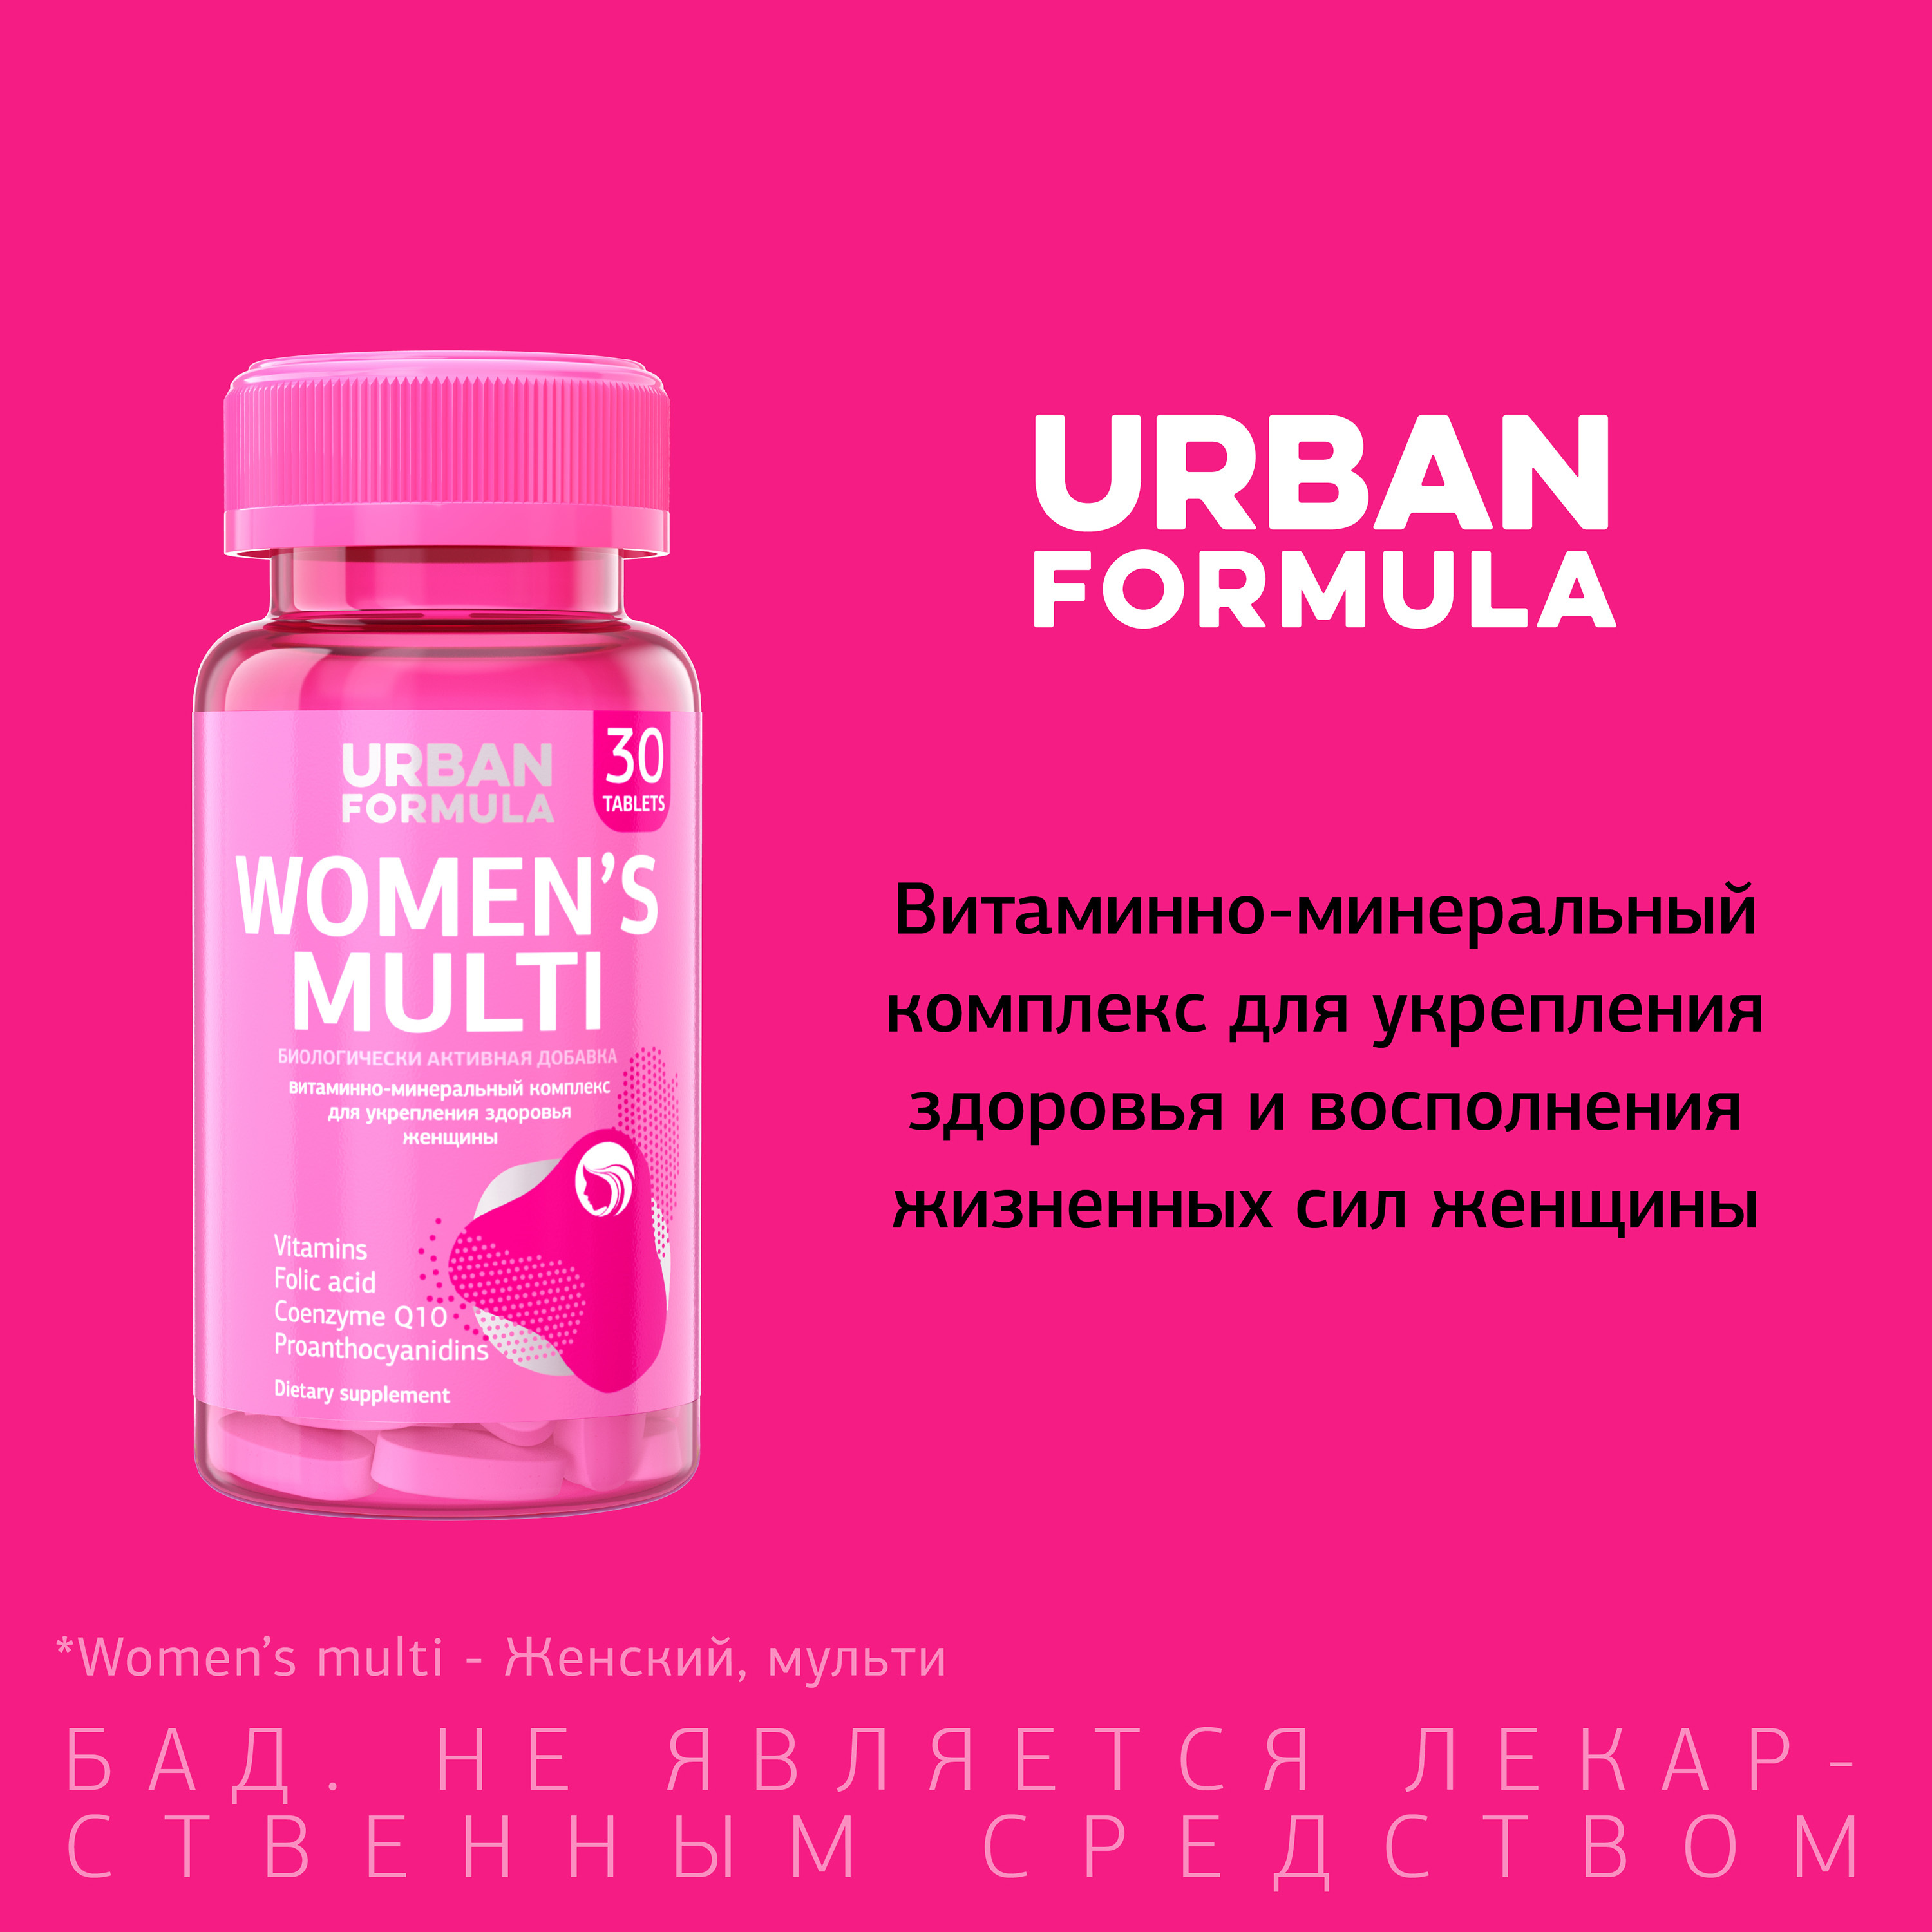 Купить Urban Formula таб №30 Women's Multi Витаминно-минеральный комплекс д/женщин от А до Zn